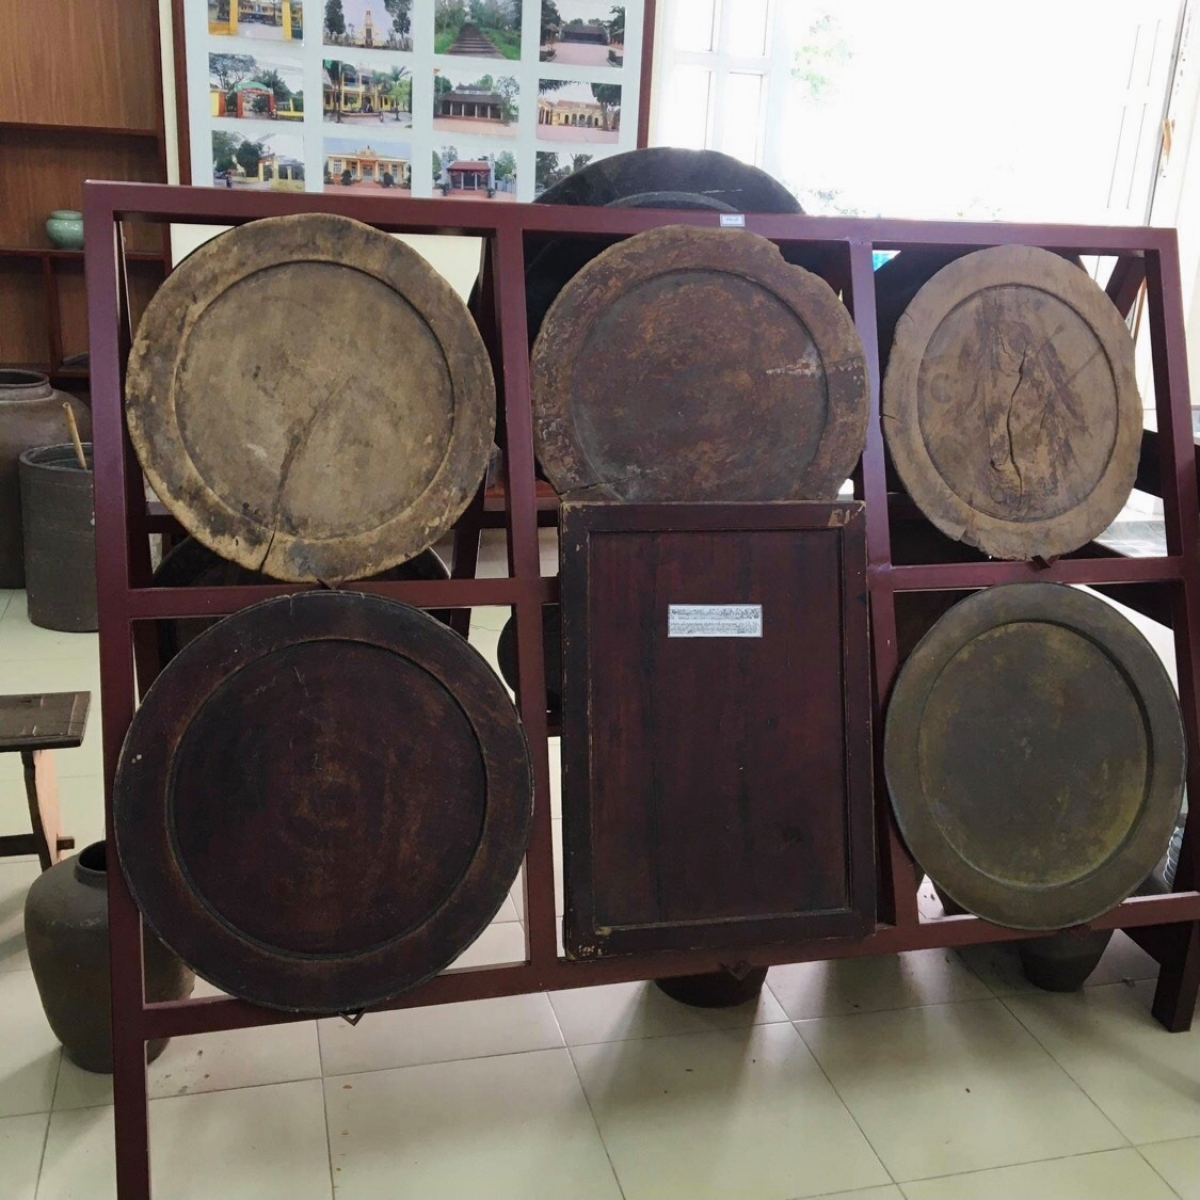 Những chiếc mâm đồng, mâm gỗ mộc mạc được trưng bày ở một góc trang trọng trong "bảo tàng". Trong số này có chiếc mâm gỗ hình chữ nhật của gia đình cụ Đặng Văn Quế sử dụng trong giỗ, chạp từ thế kỷ 19